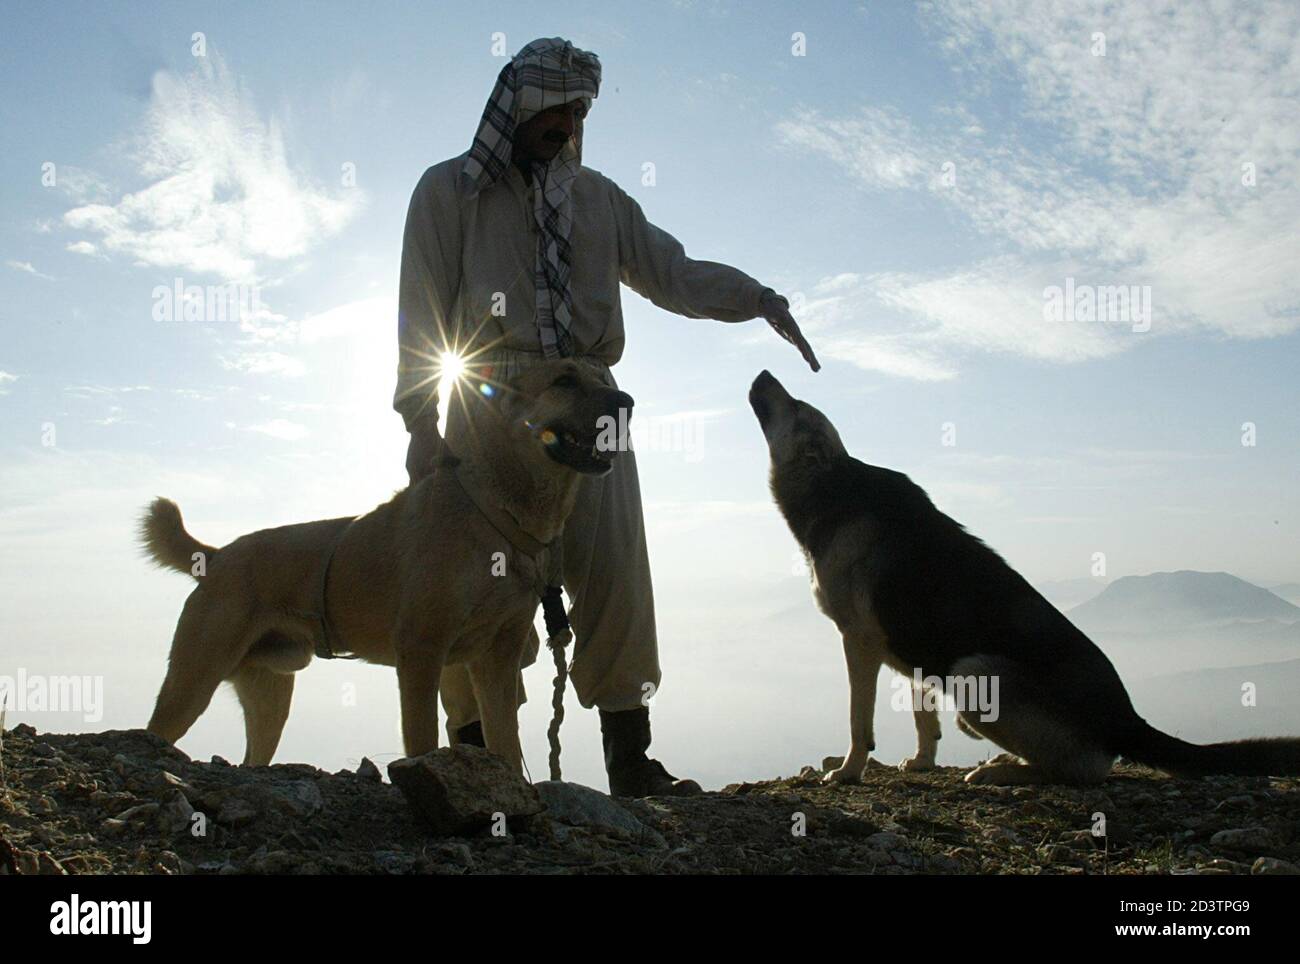 Mahboob Nasari Bakshi, entrenador de perros afgano, juega con sus perros  disco y Sher (L) en la cima de una colina en Kabul Janaury 12, 2003. Su  perro Sher es un luchador